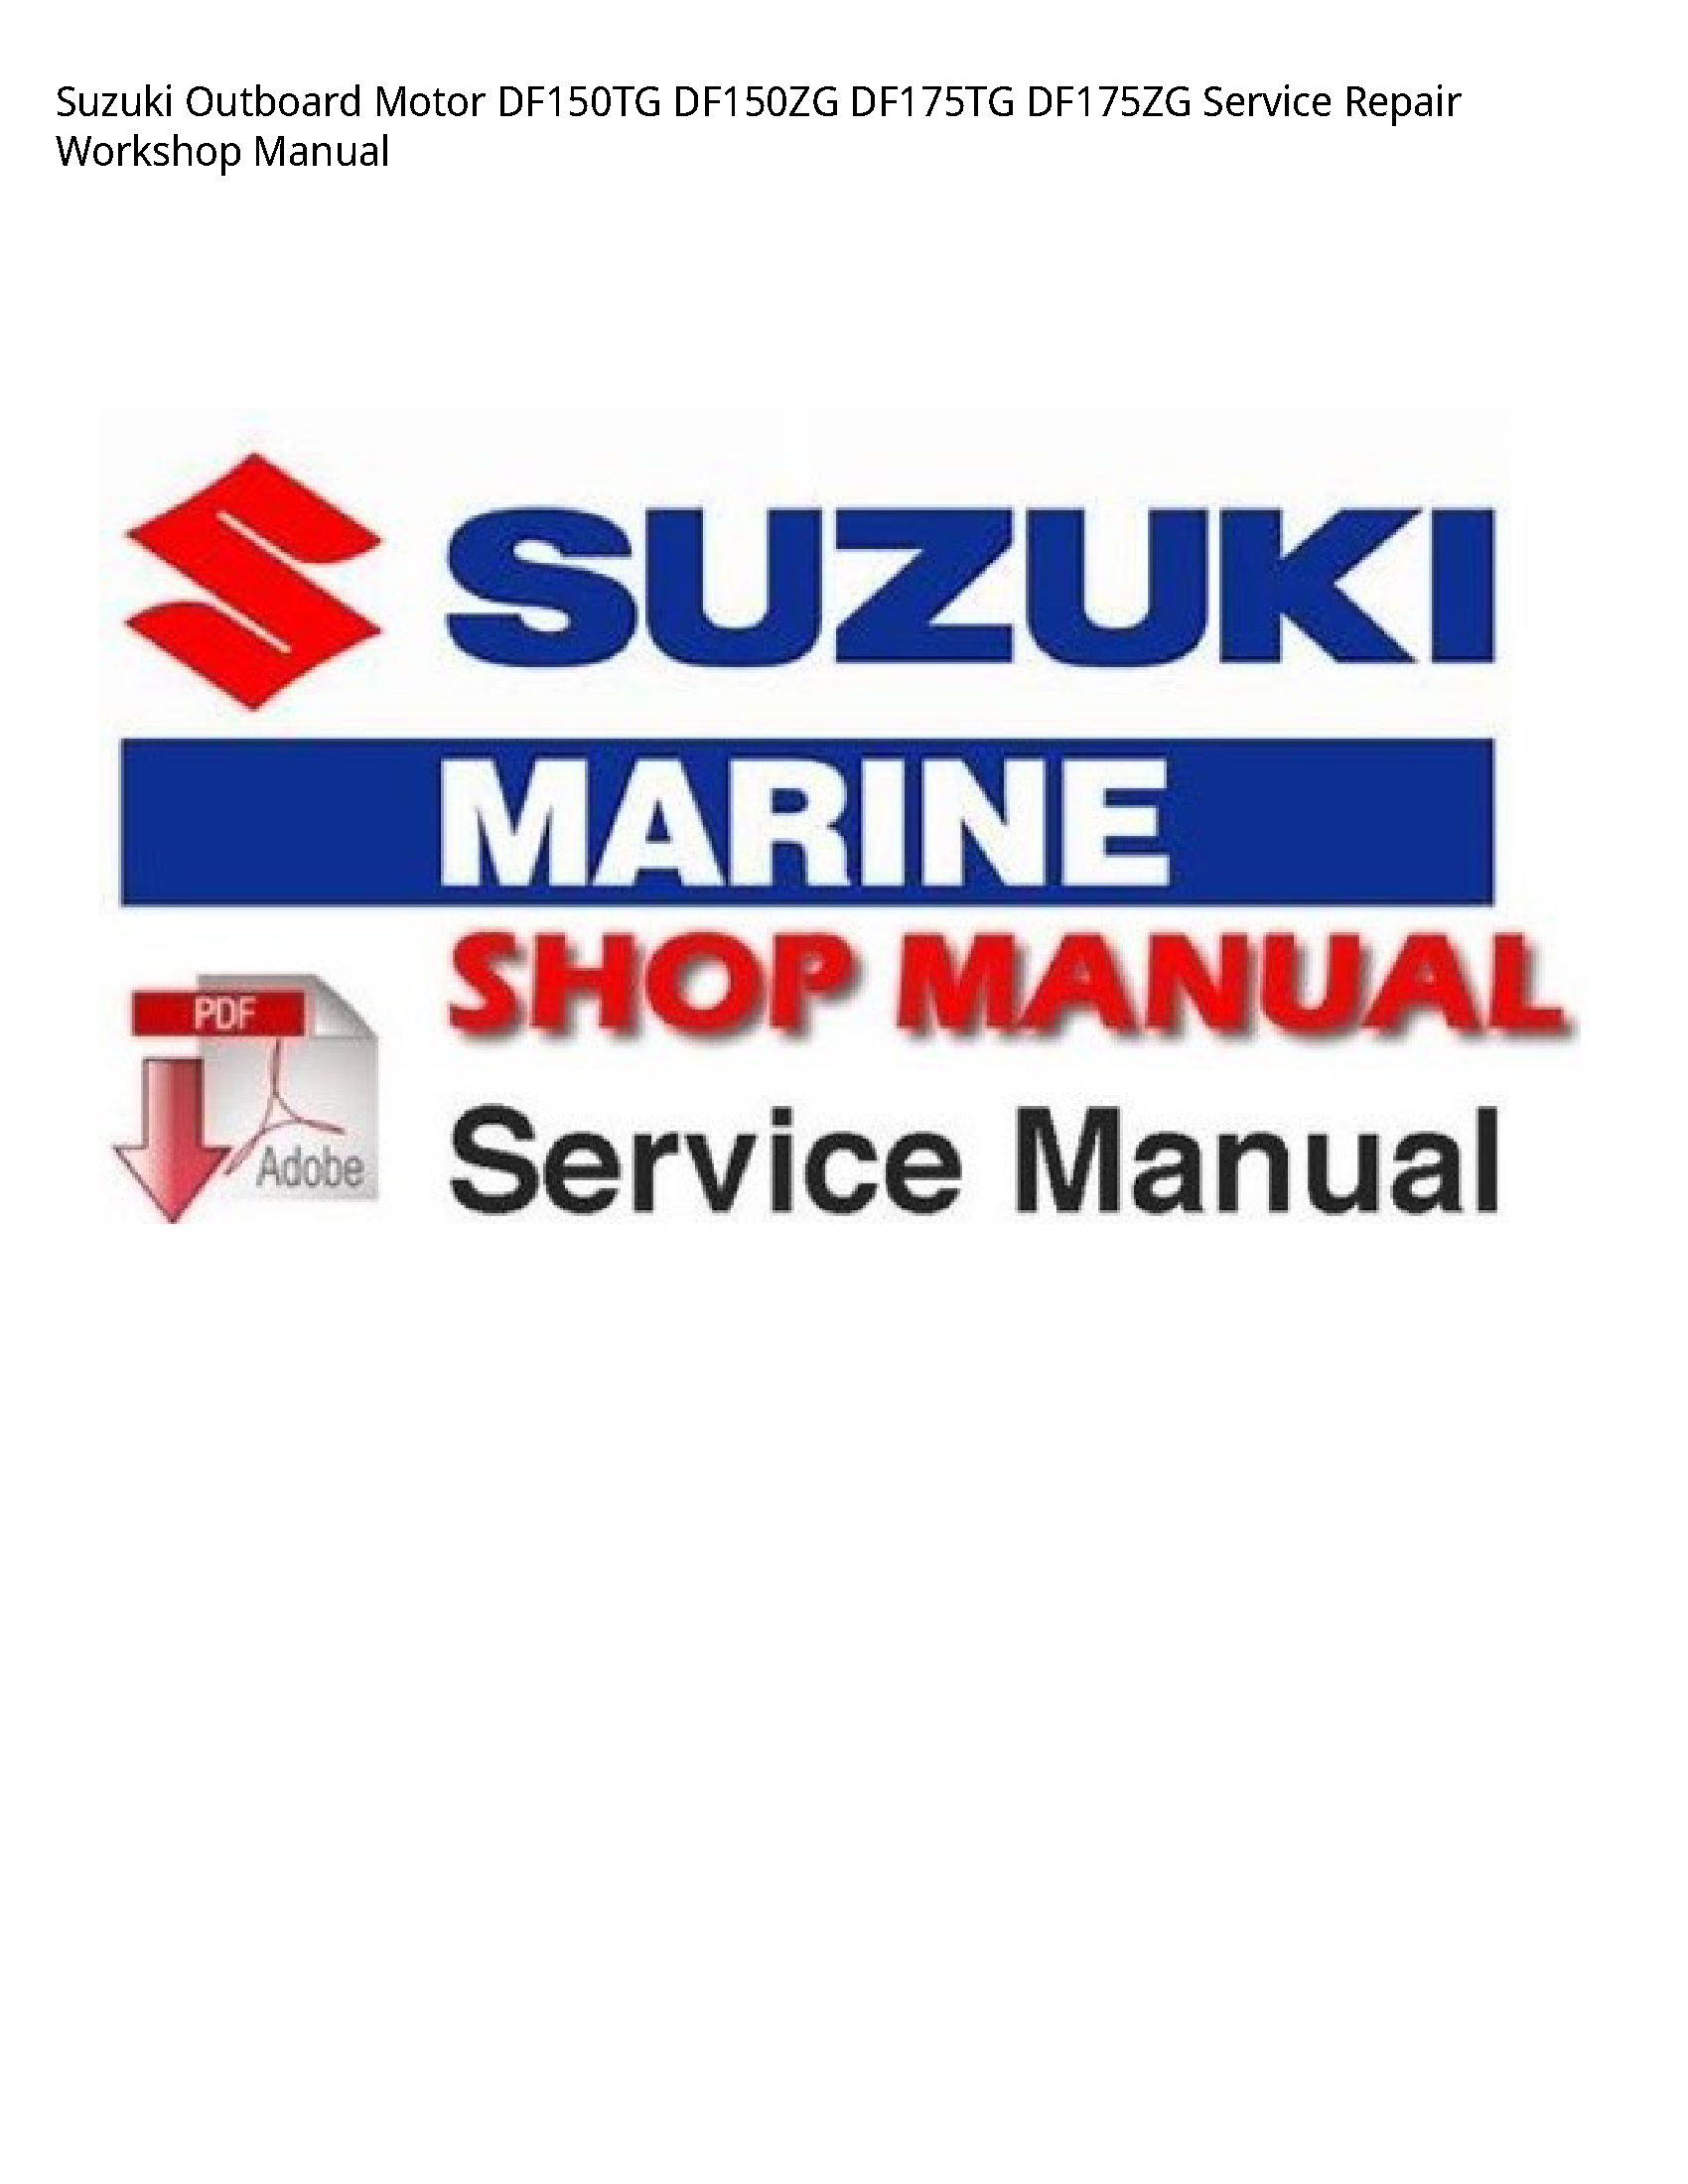 Suzuki DF150TG Outboard Motor manual